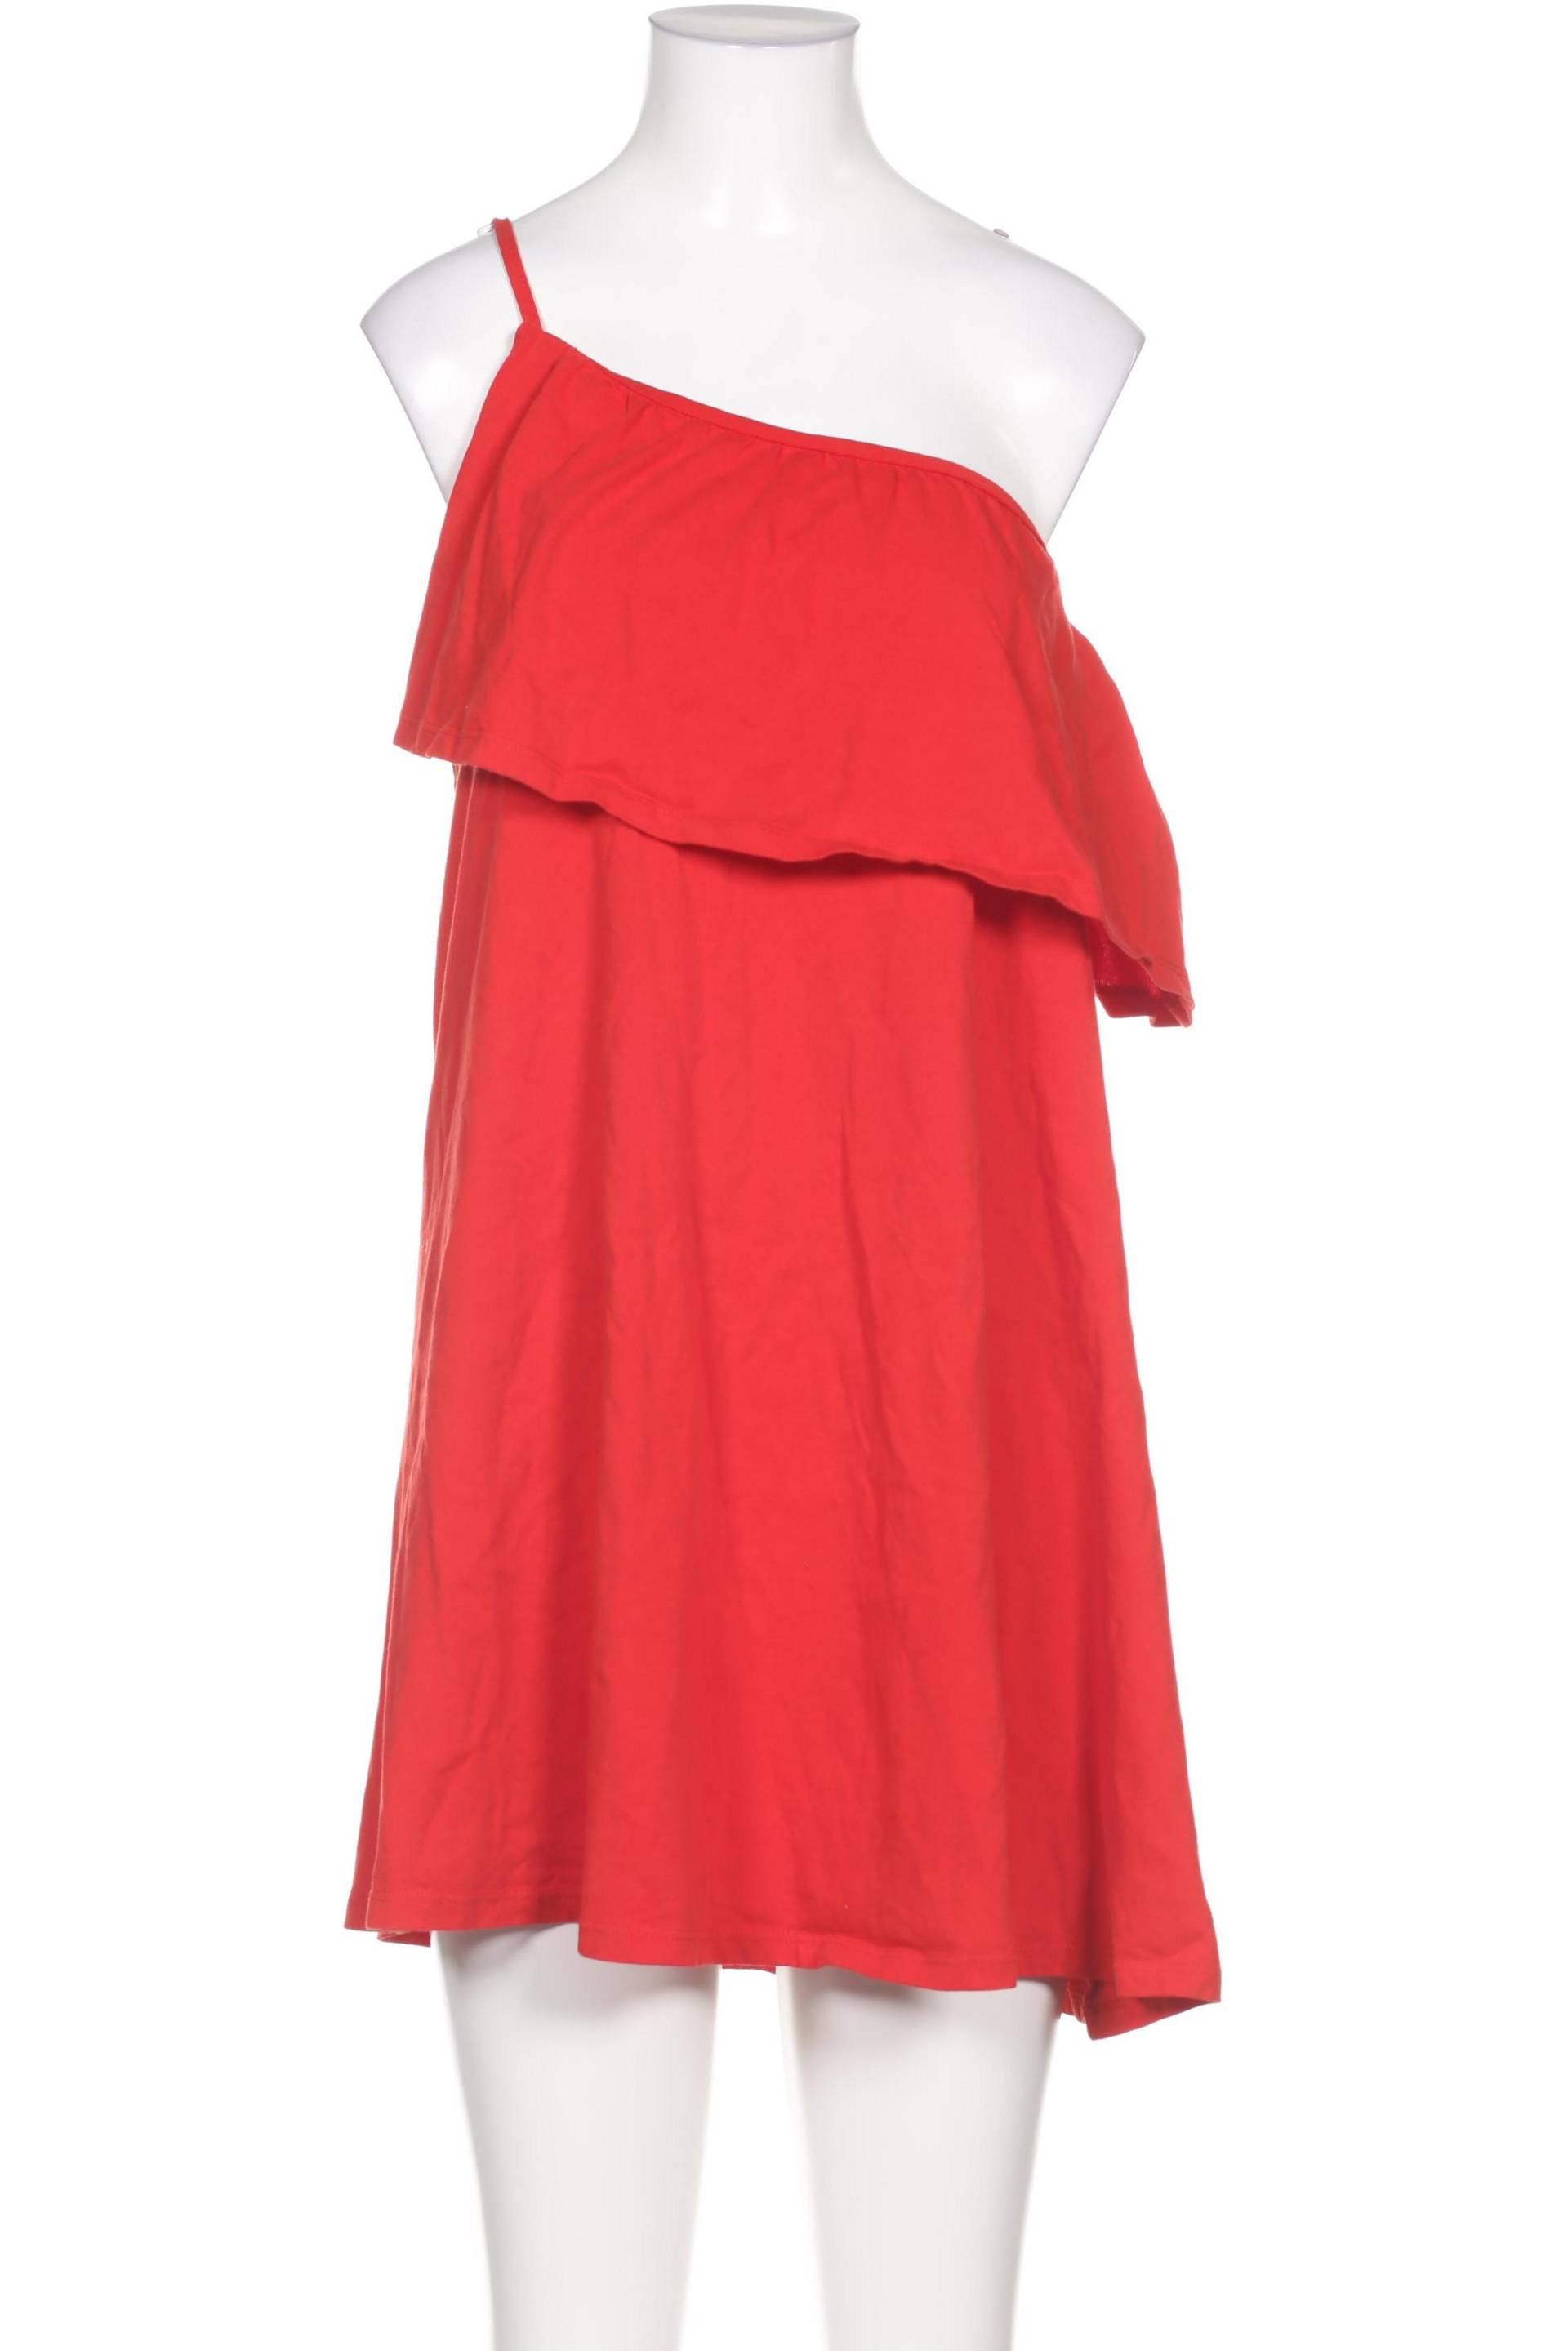 asos Damen Kleid, rot von asos